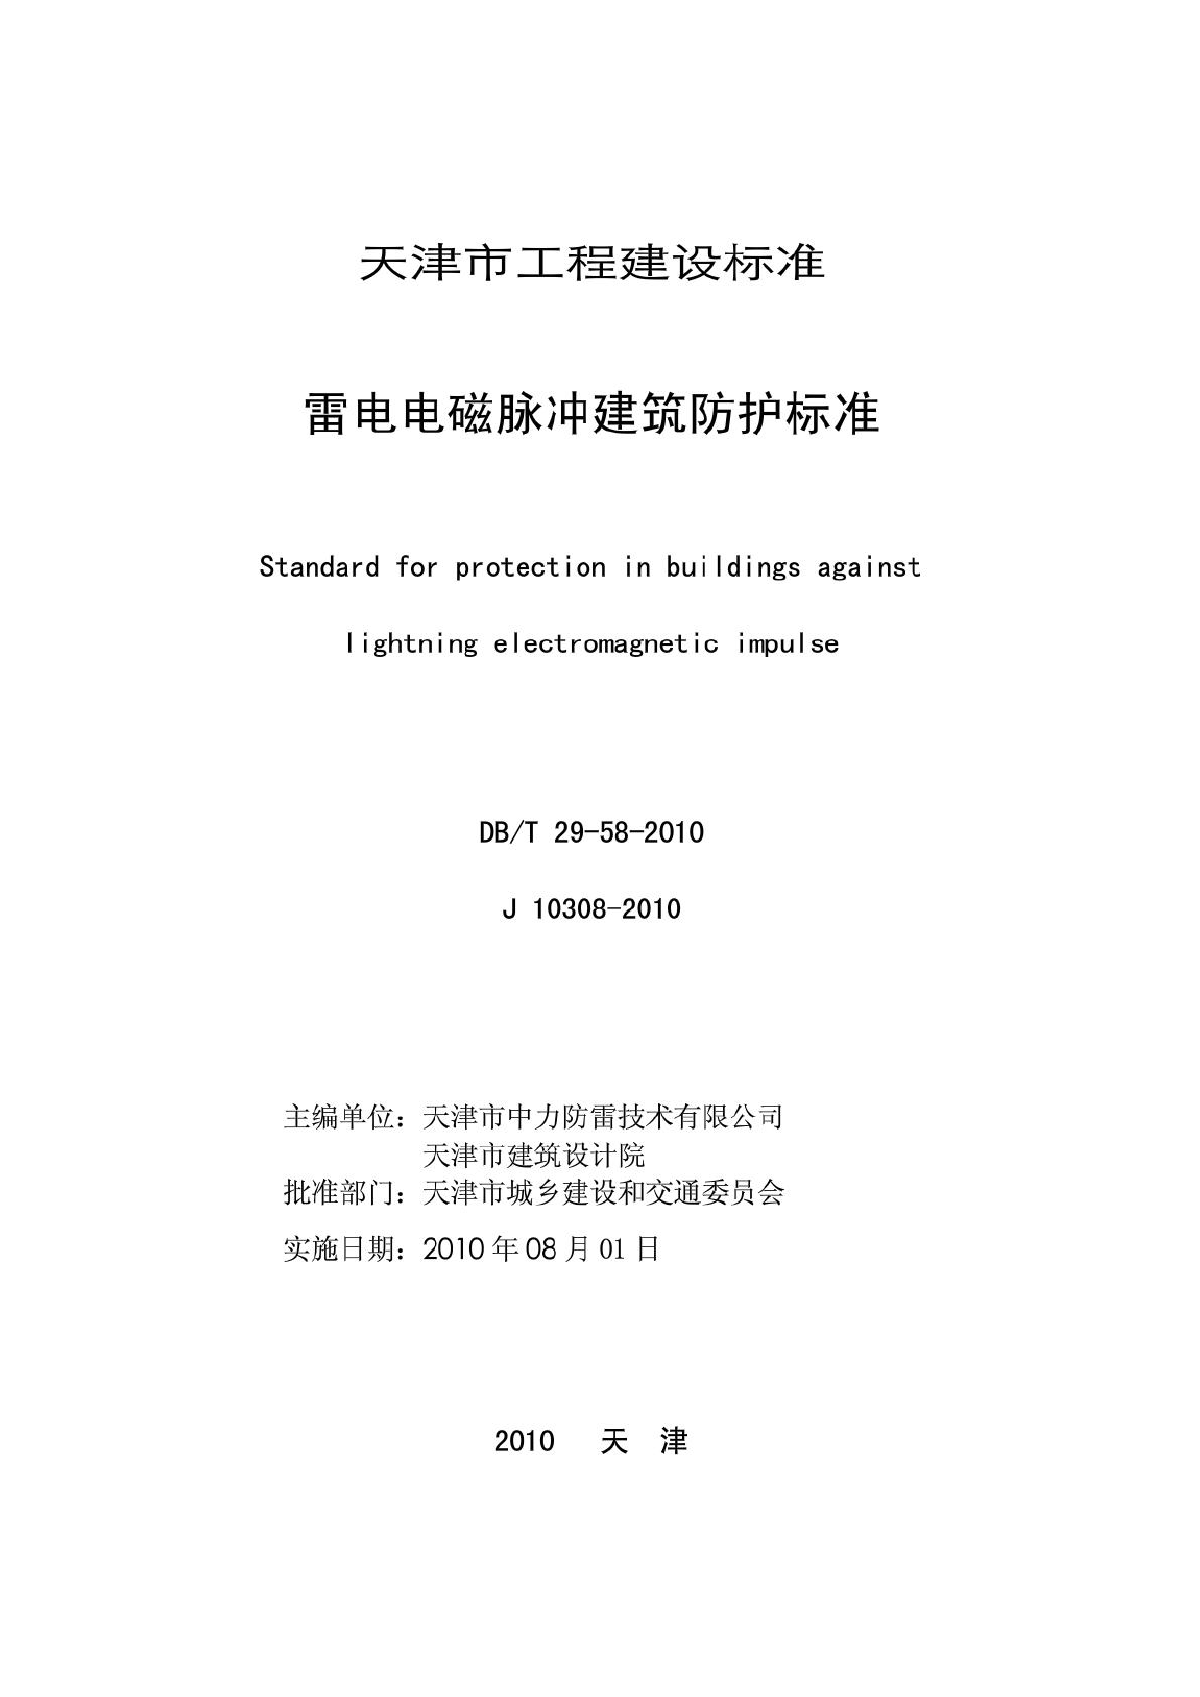 天津市工程建设标准--雷电电磁脉冲建筑防护标准-图二